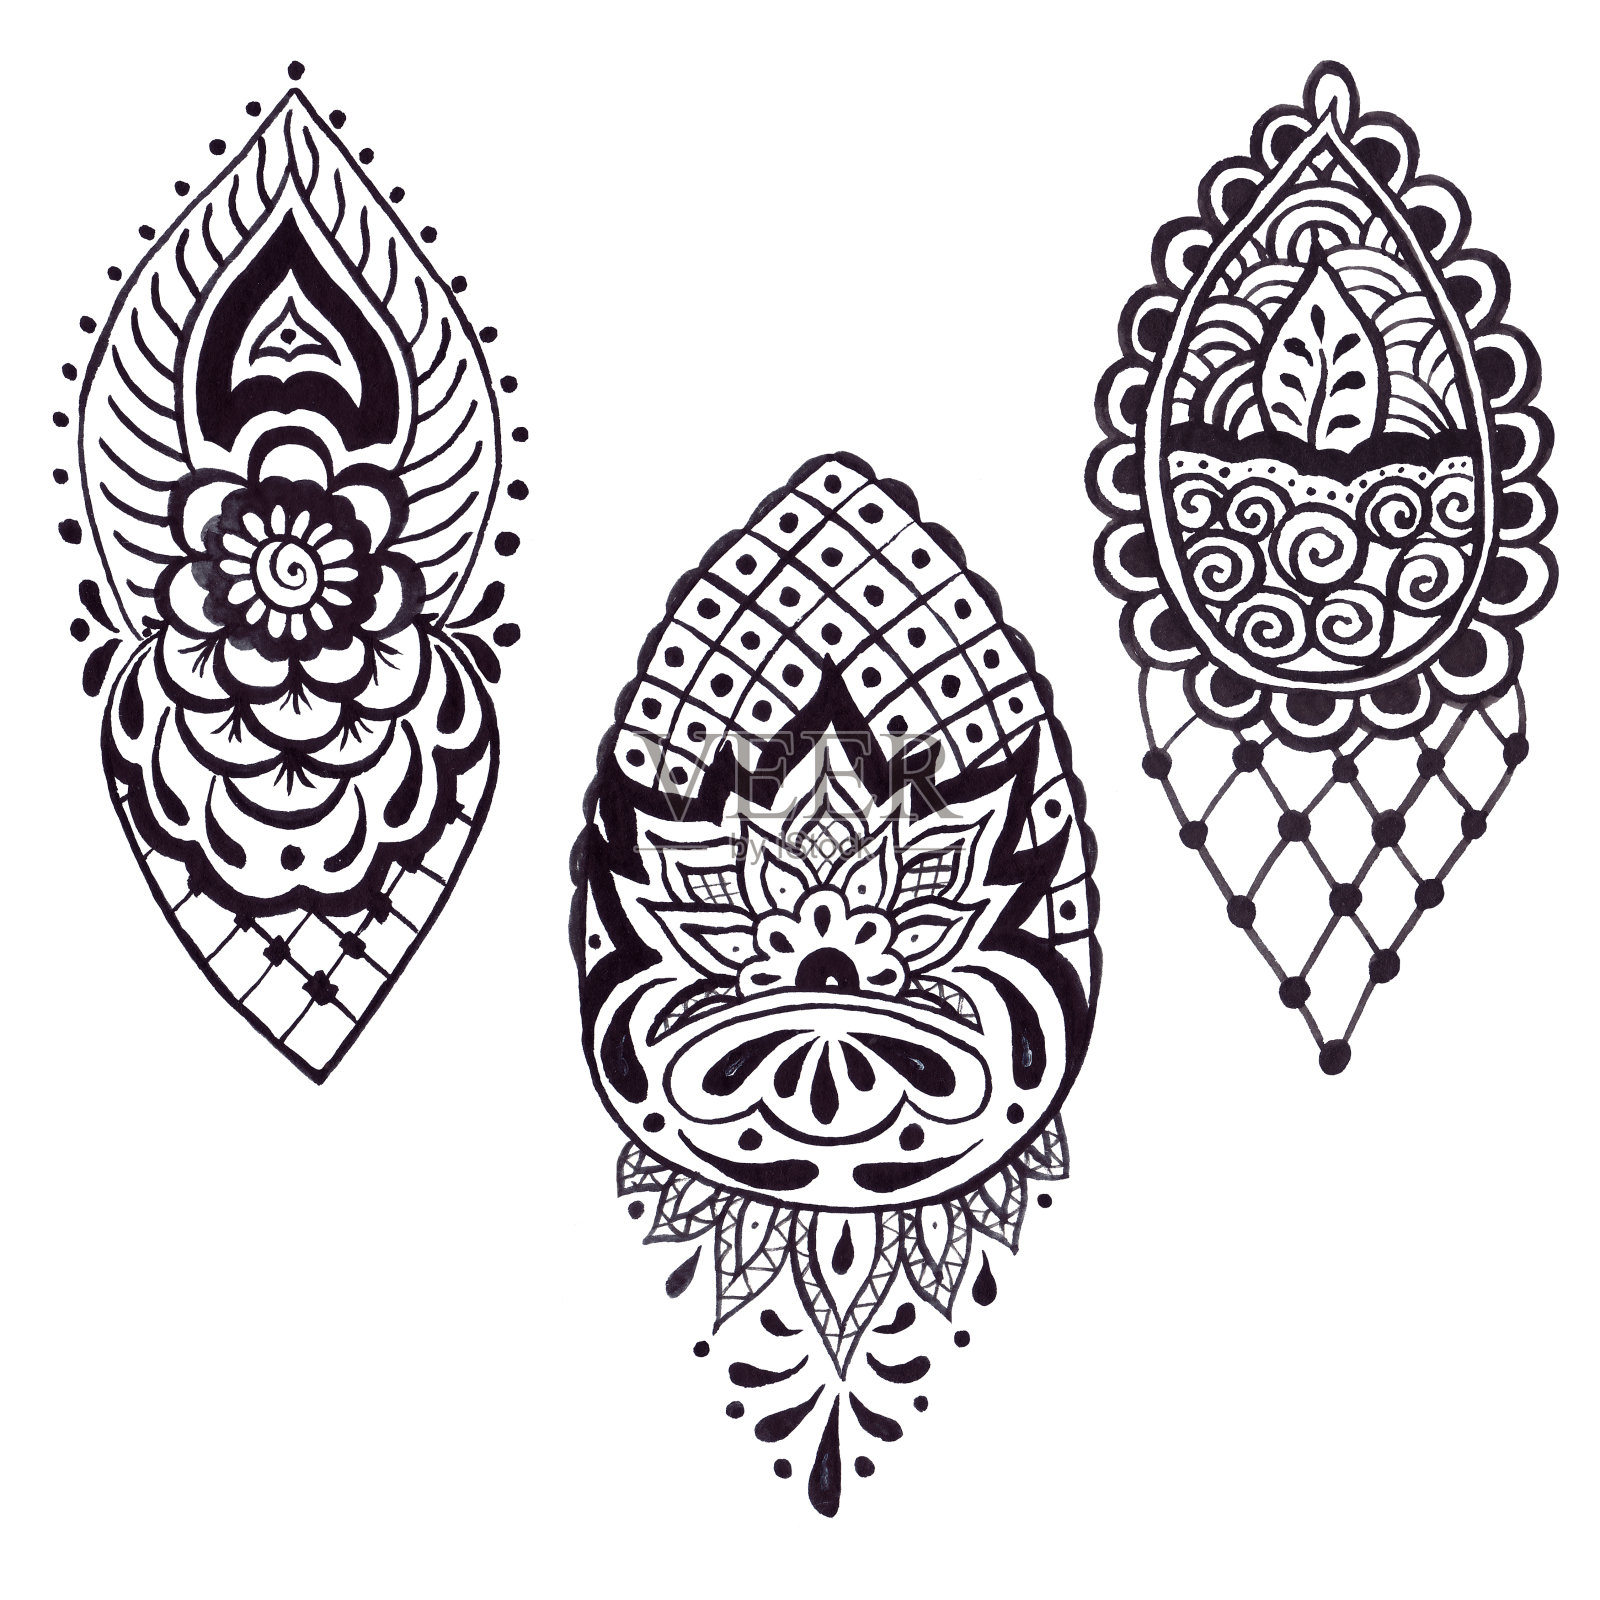 印度元素细节装饰菱形垂直用黑色墨水手工制作插画图片素材